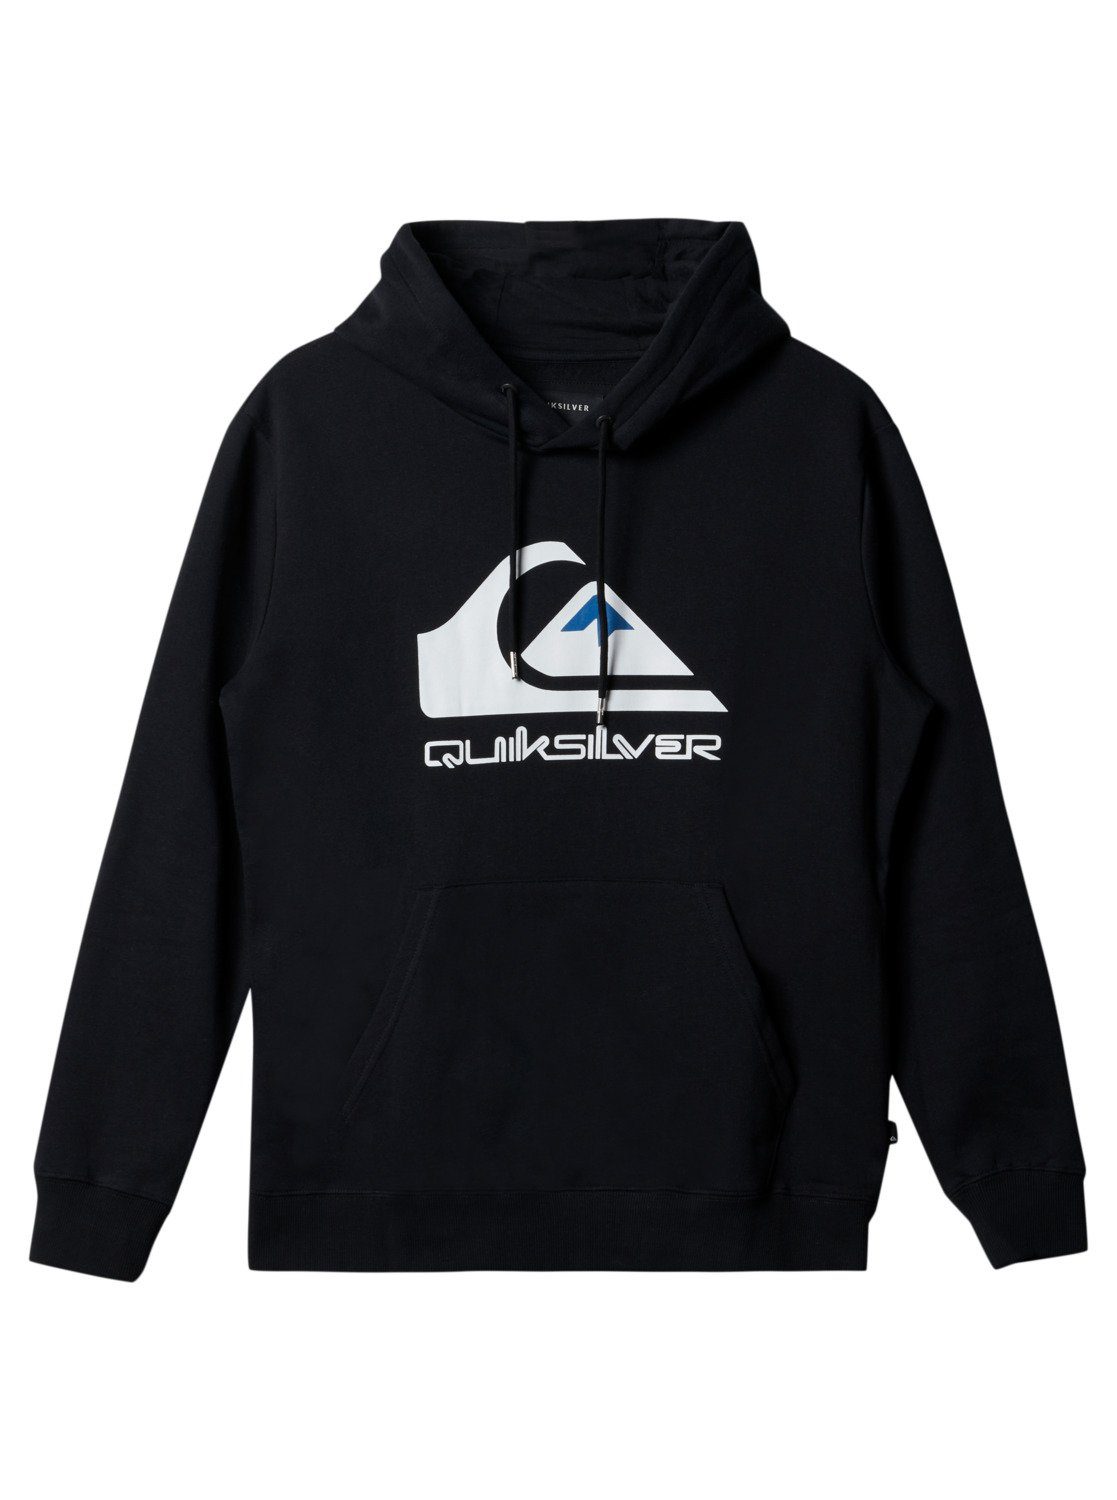 Quiksilver Big Logo Black Sweatshirt